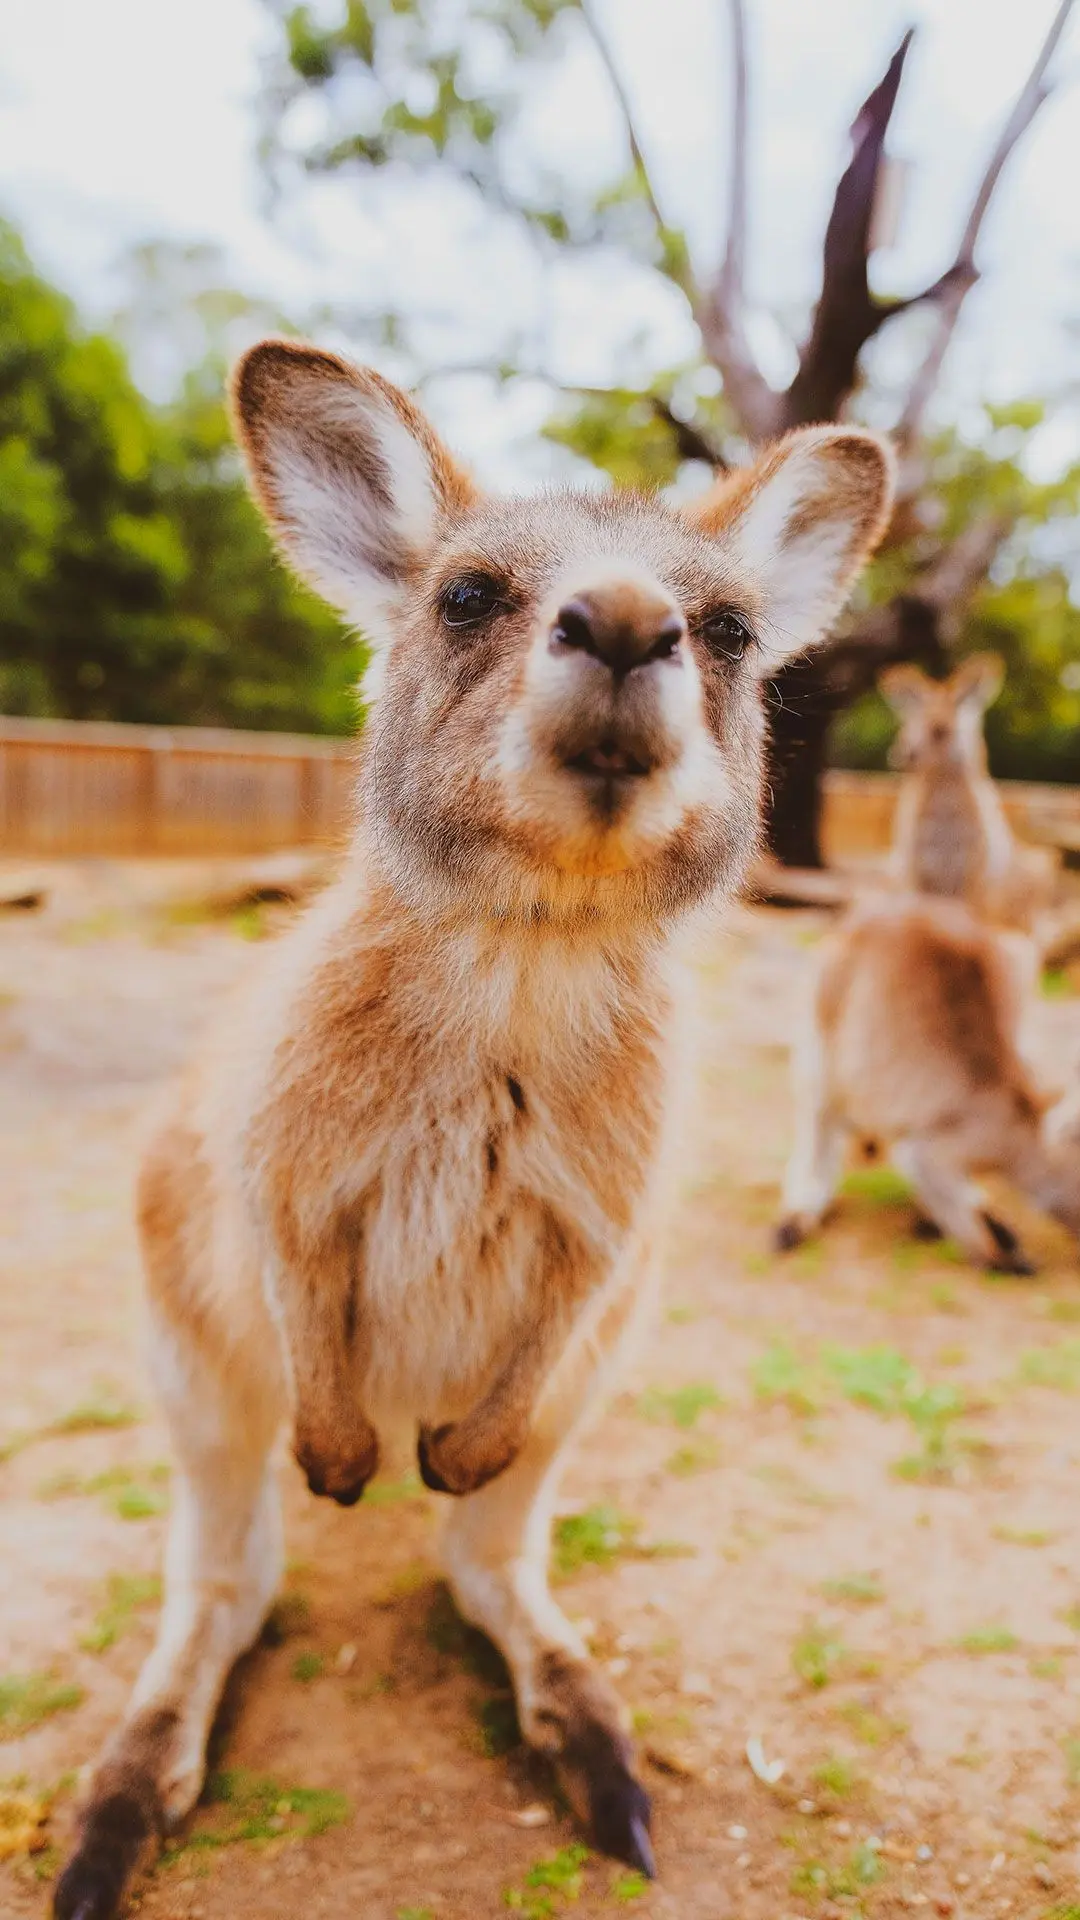 A kangaroo sniffs the camera - from Yujia Tang via Unsplash